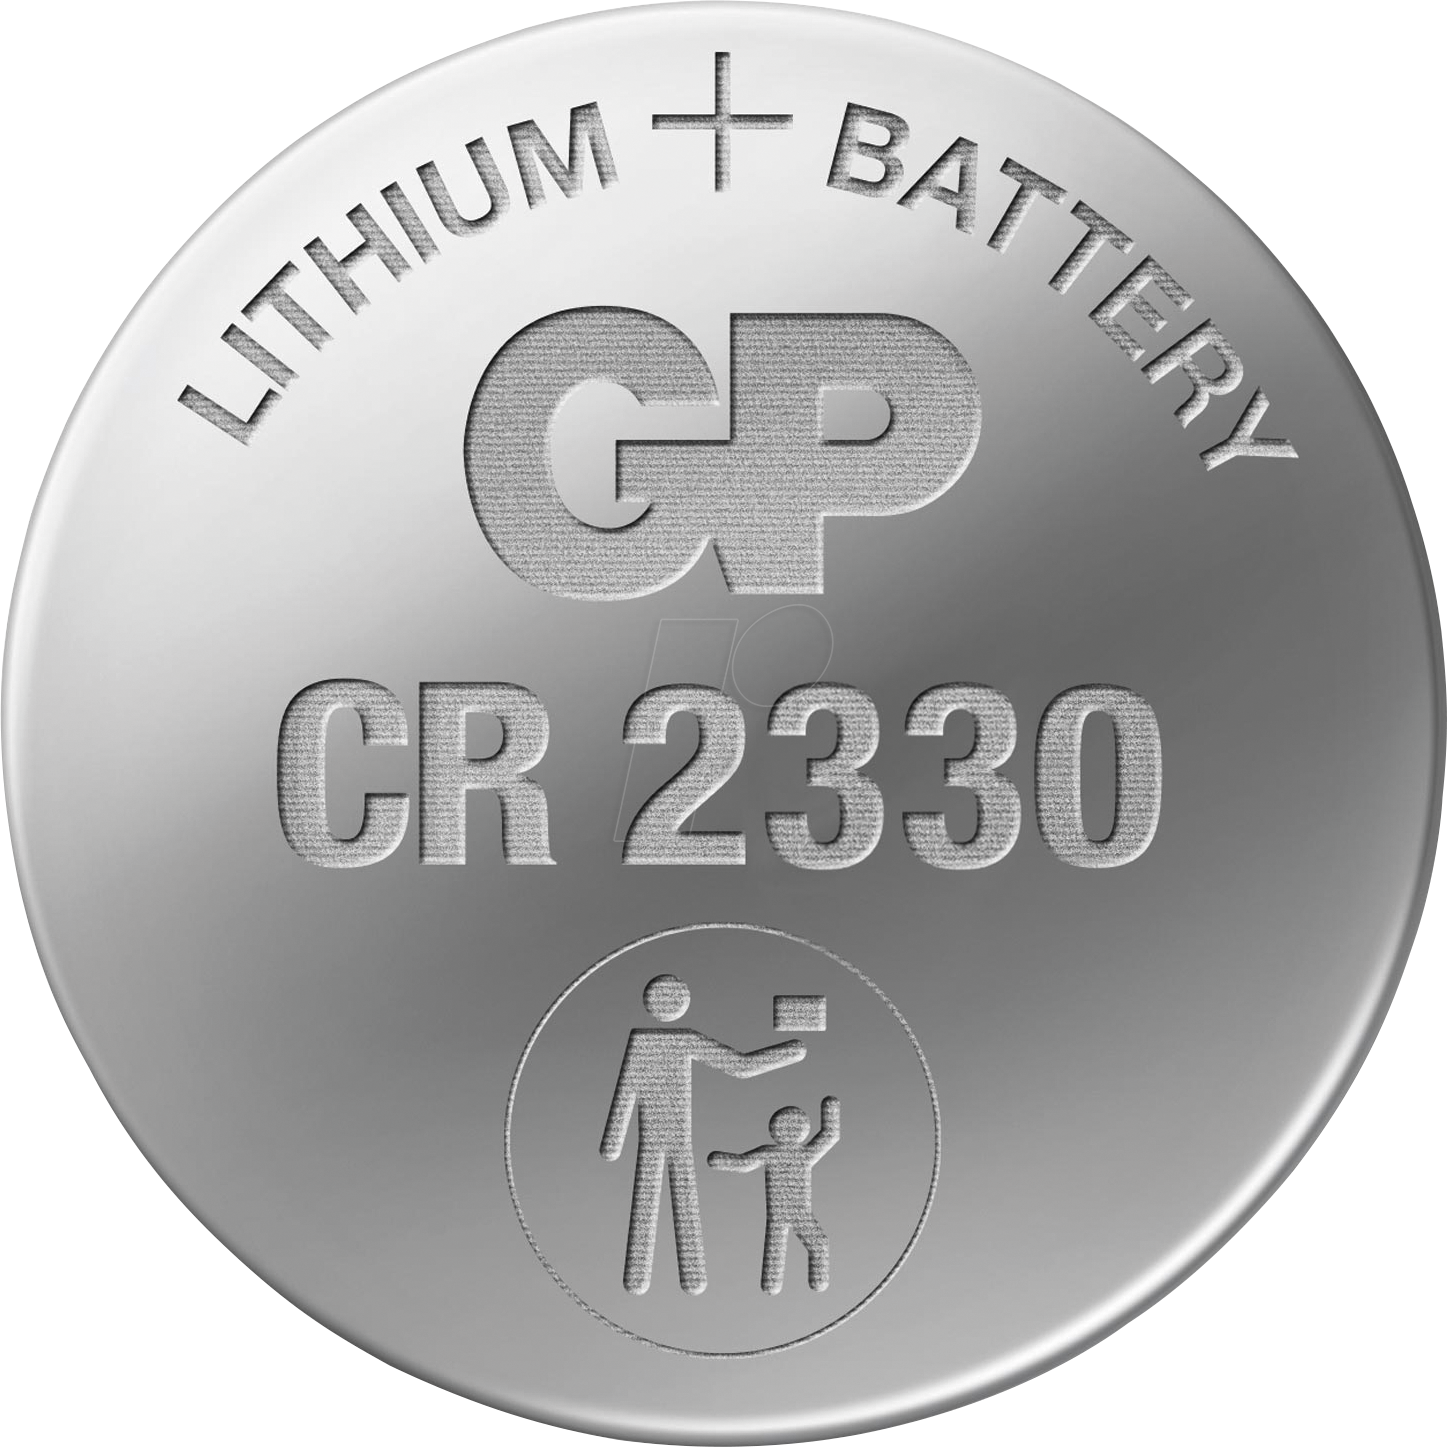 CR 2330 GP - Lithium-Knopfzelle, 3 V, 260 mAh, 23x3,0 mm von GP-BATTERIES